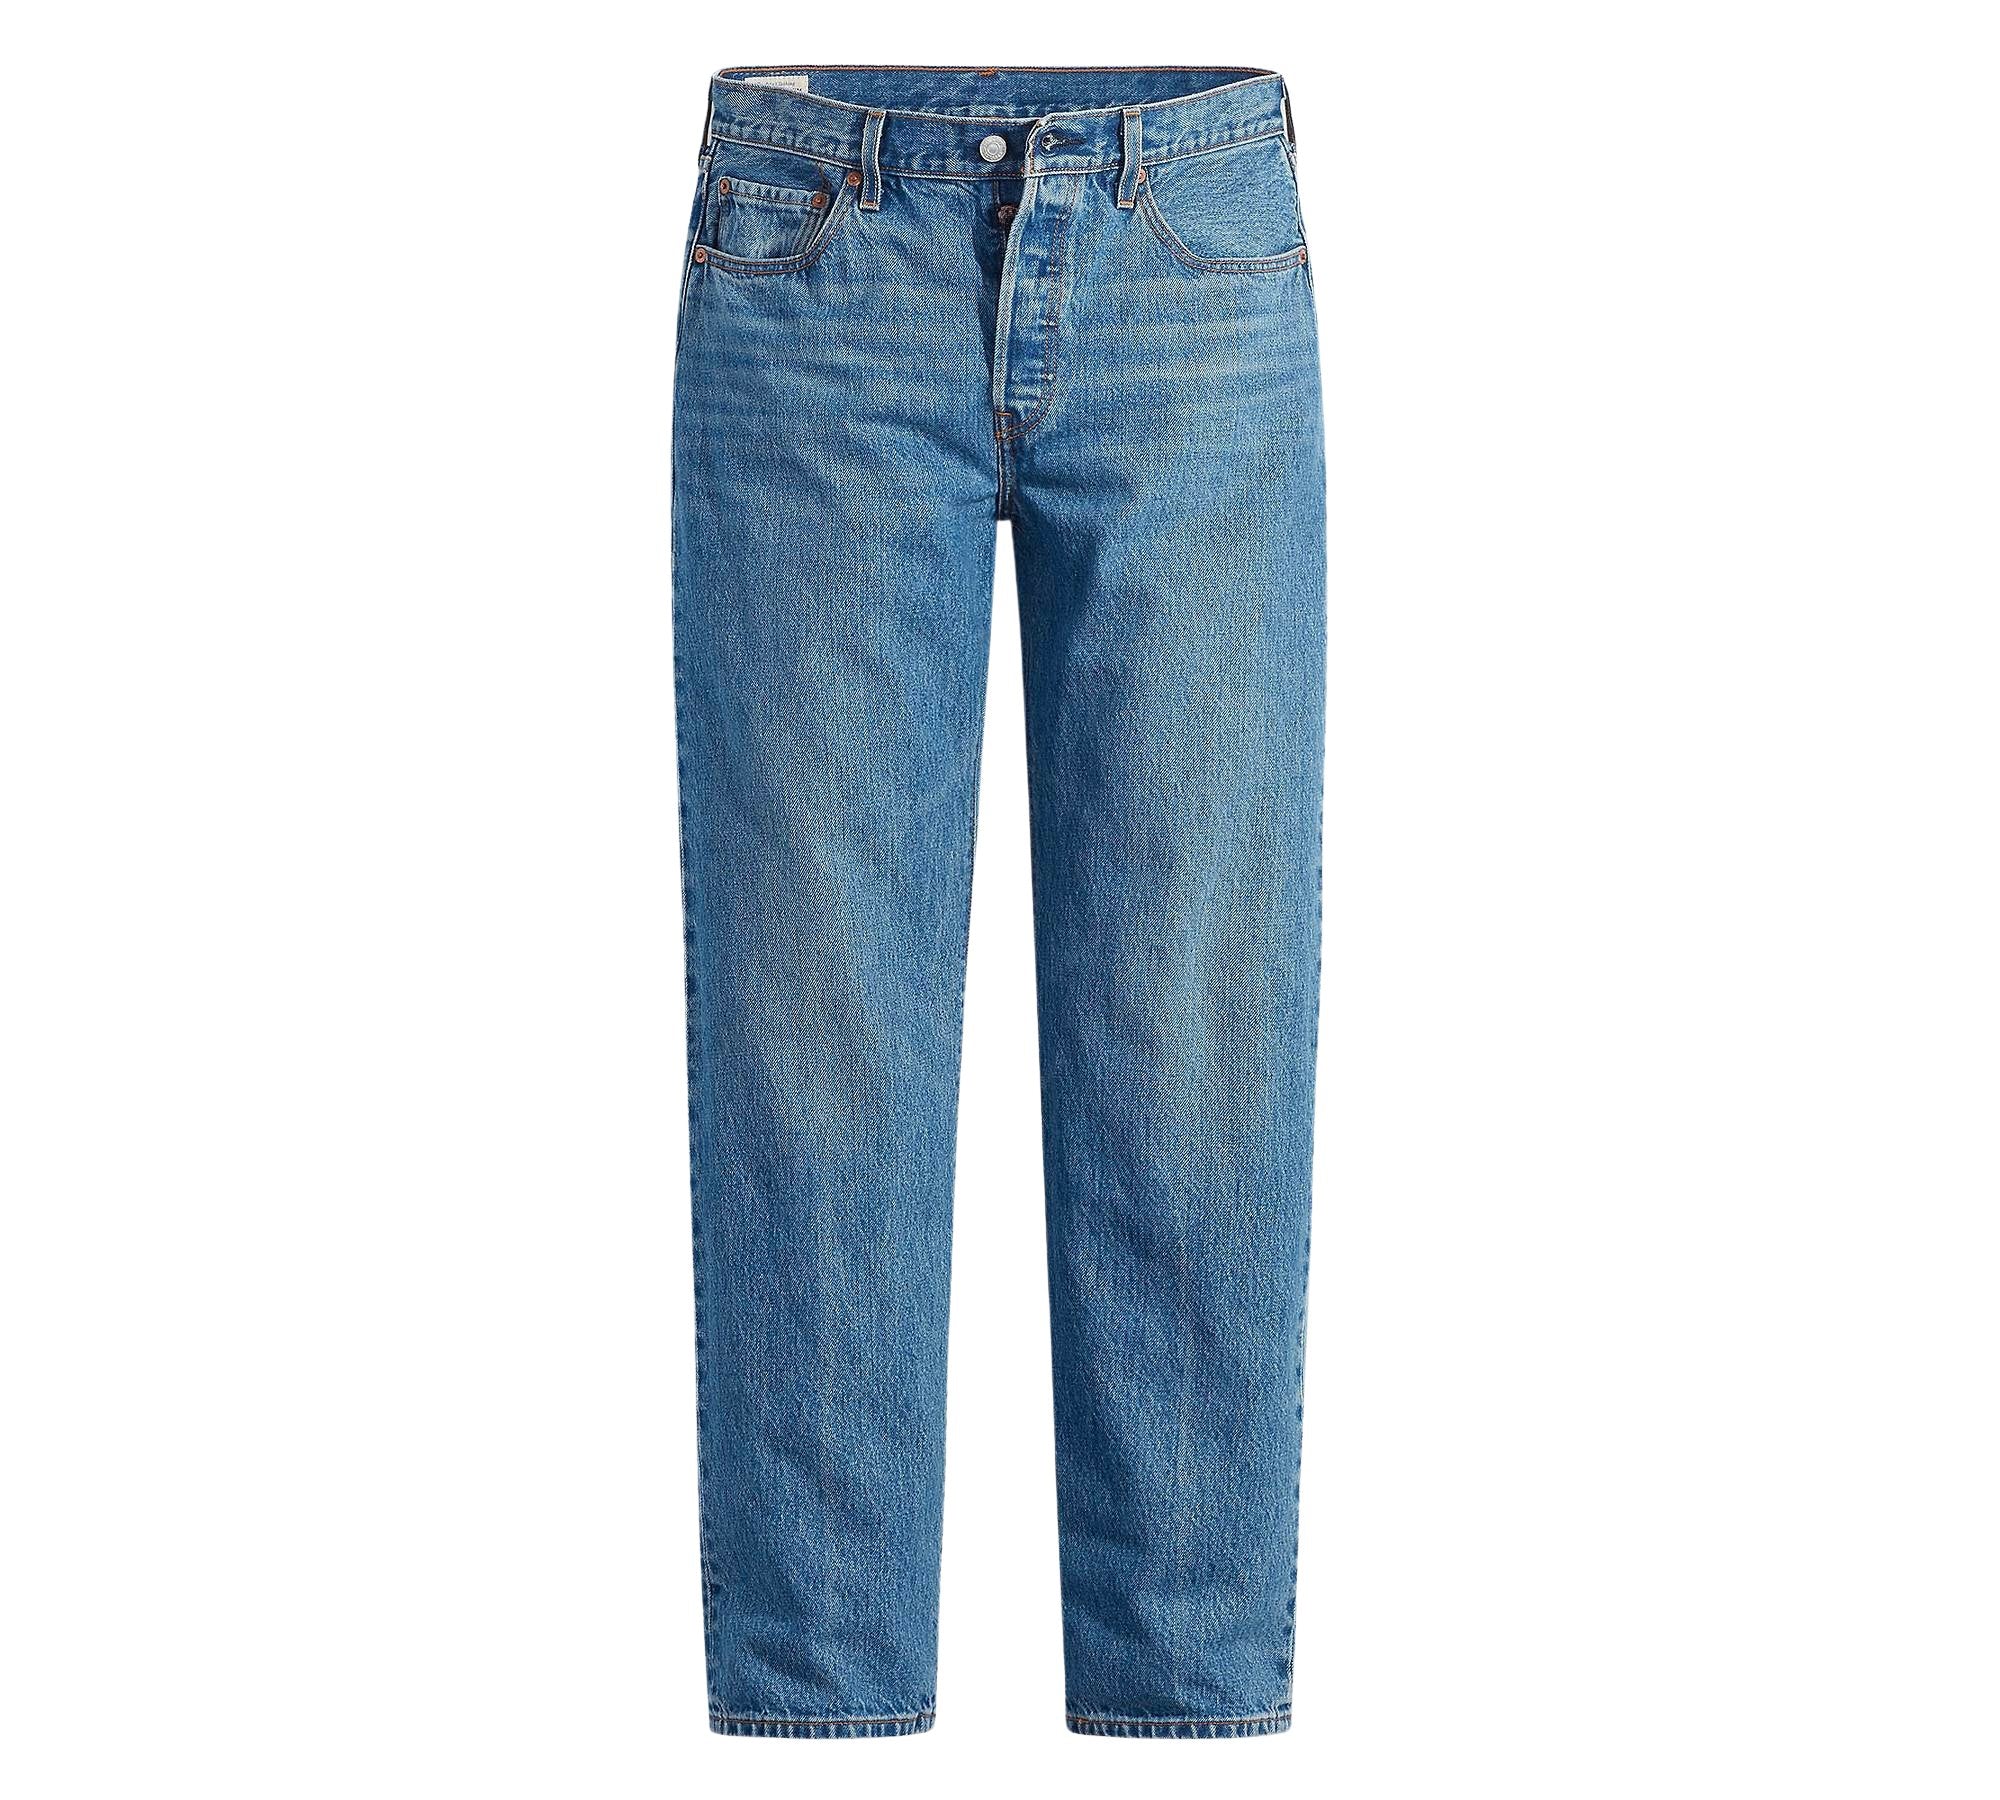 Vintage Levi's Classic Blue Jeans - Waist 34 - Length 34 - Vintage Superstore Online